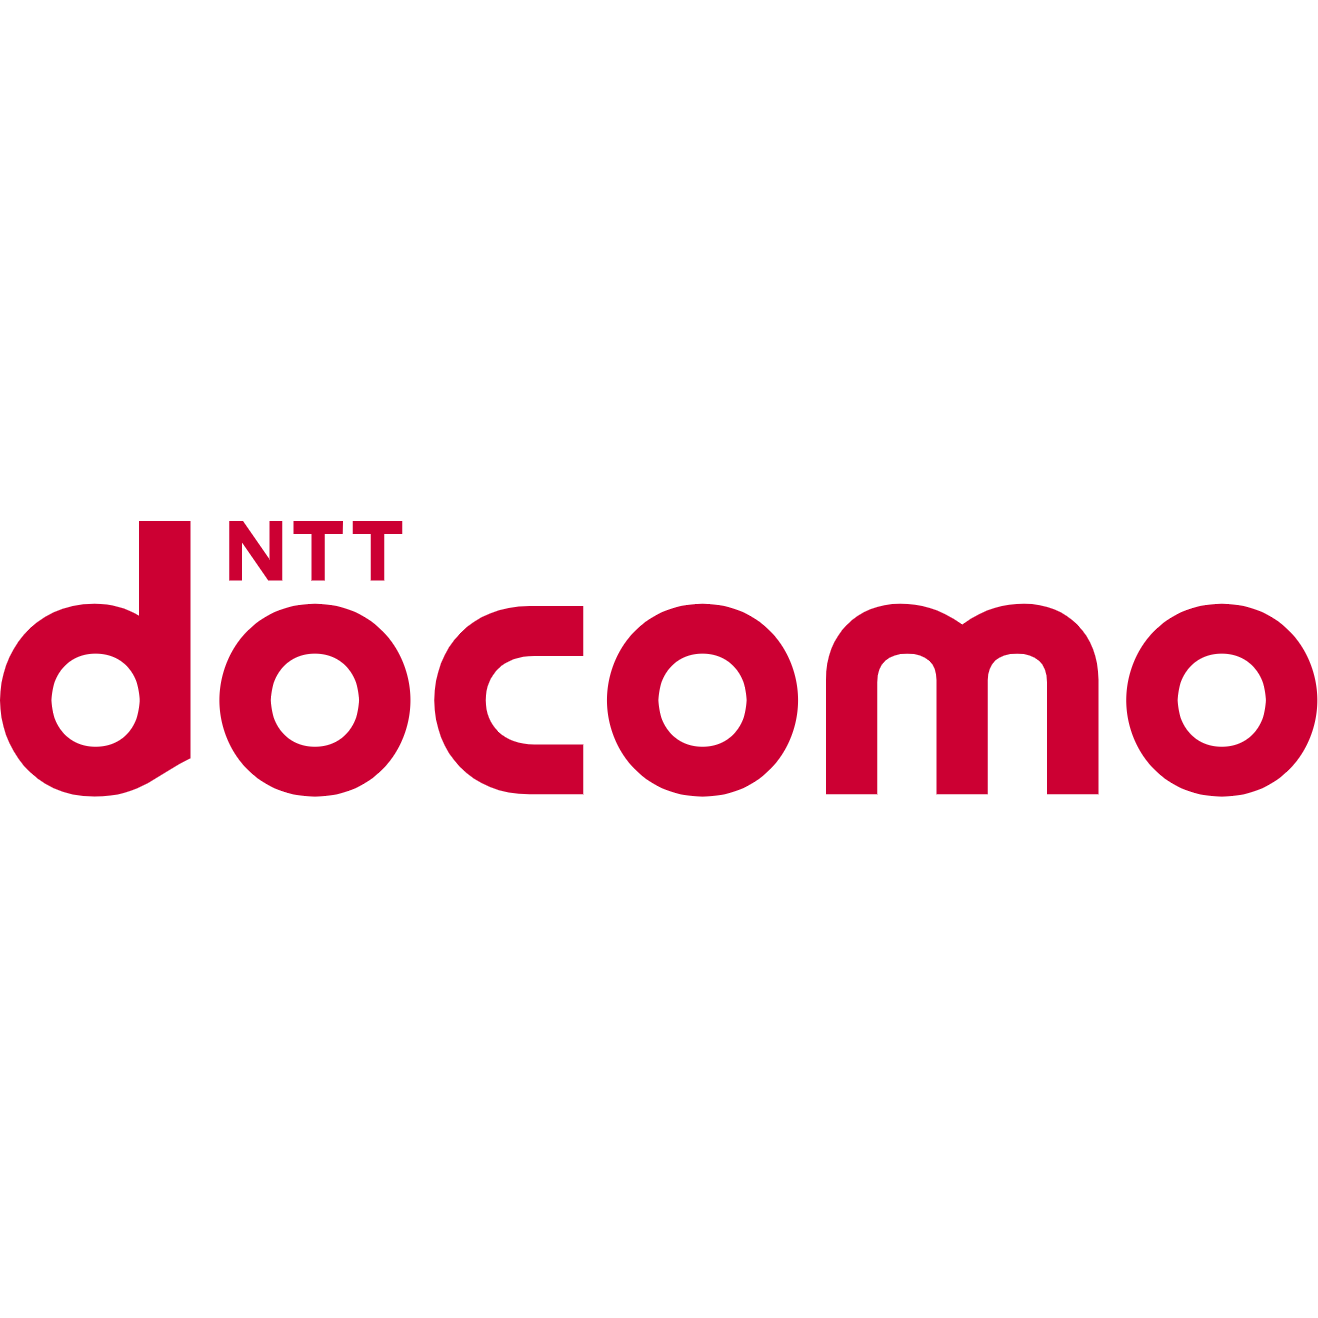 NTT Docomo logo (transparent PNG)